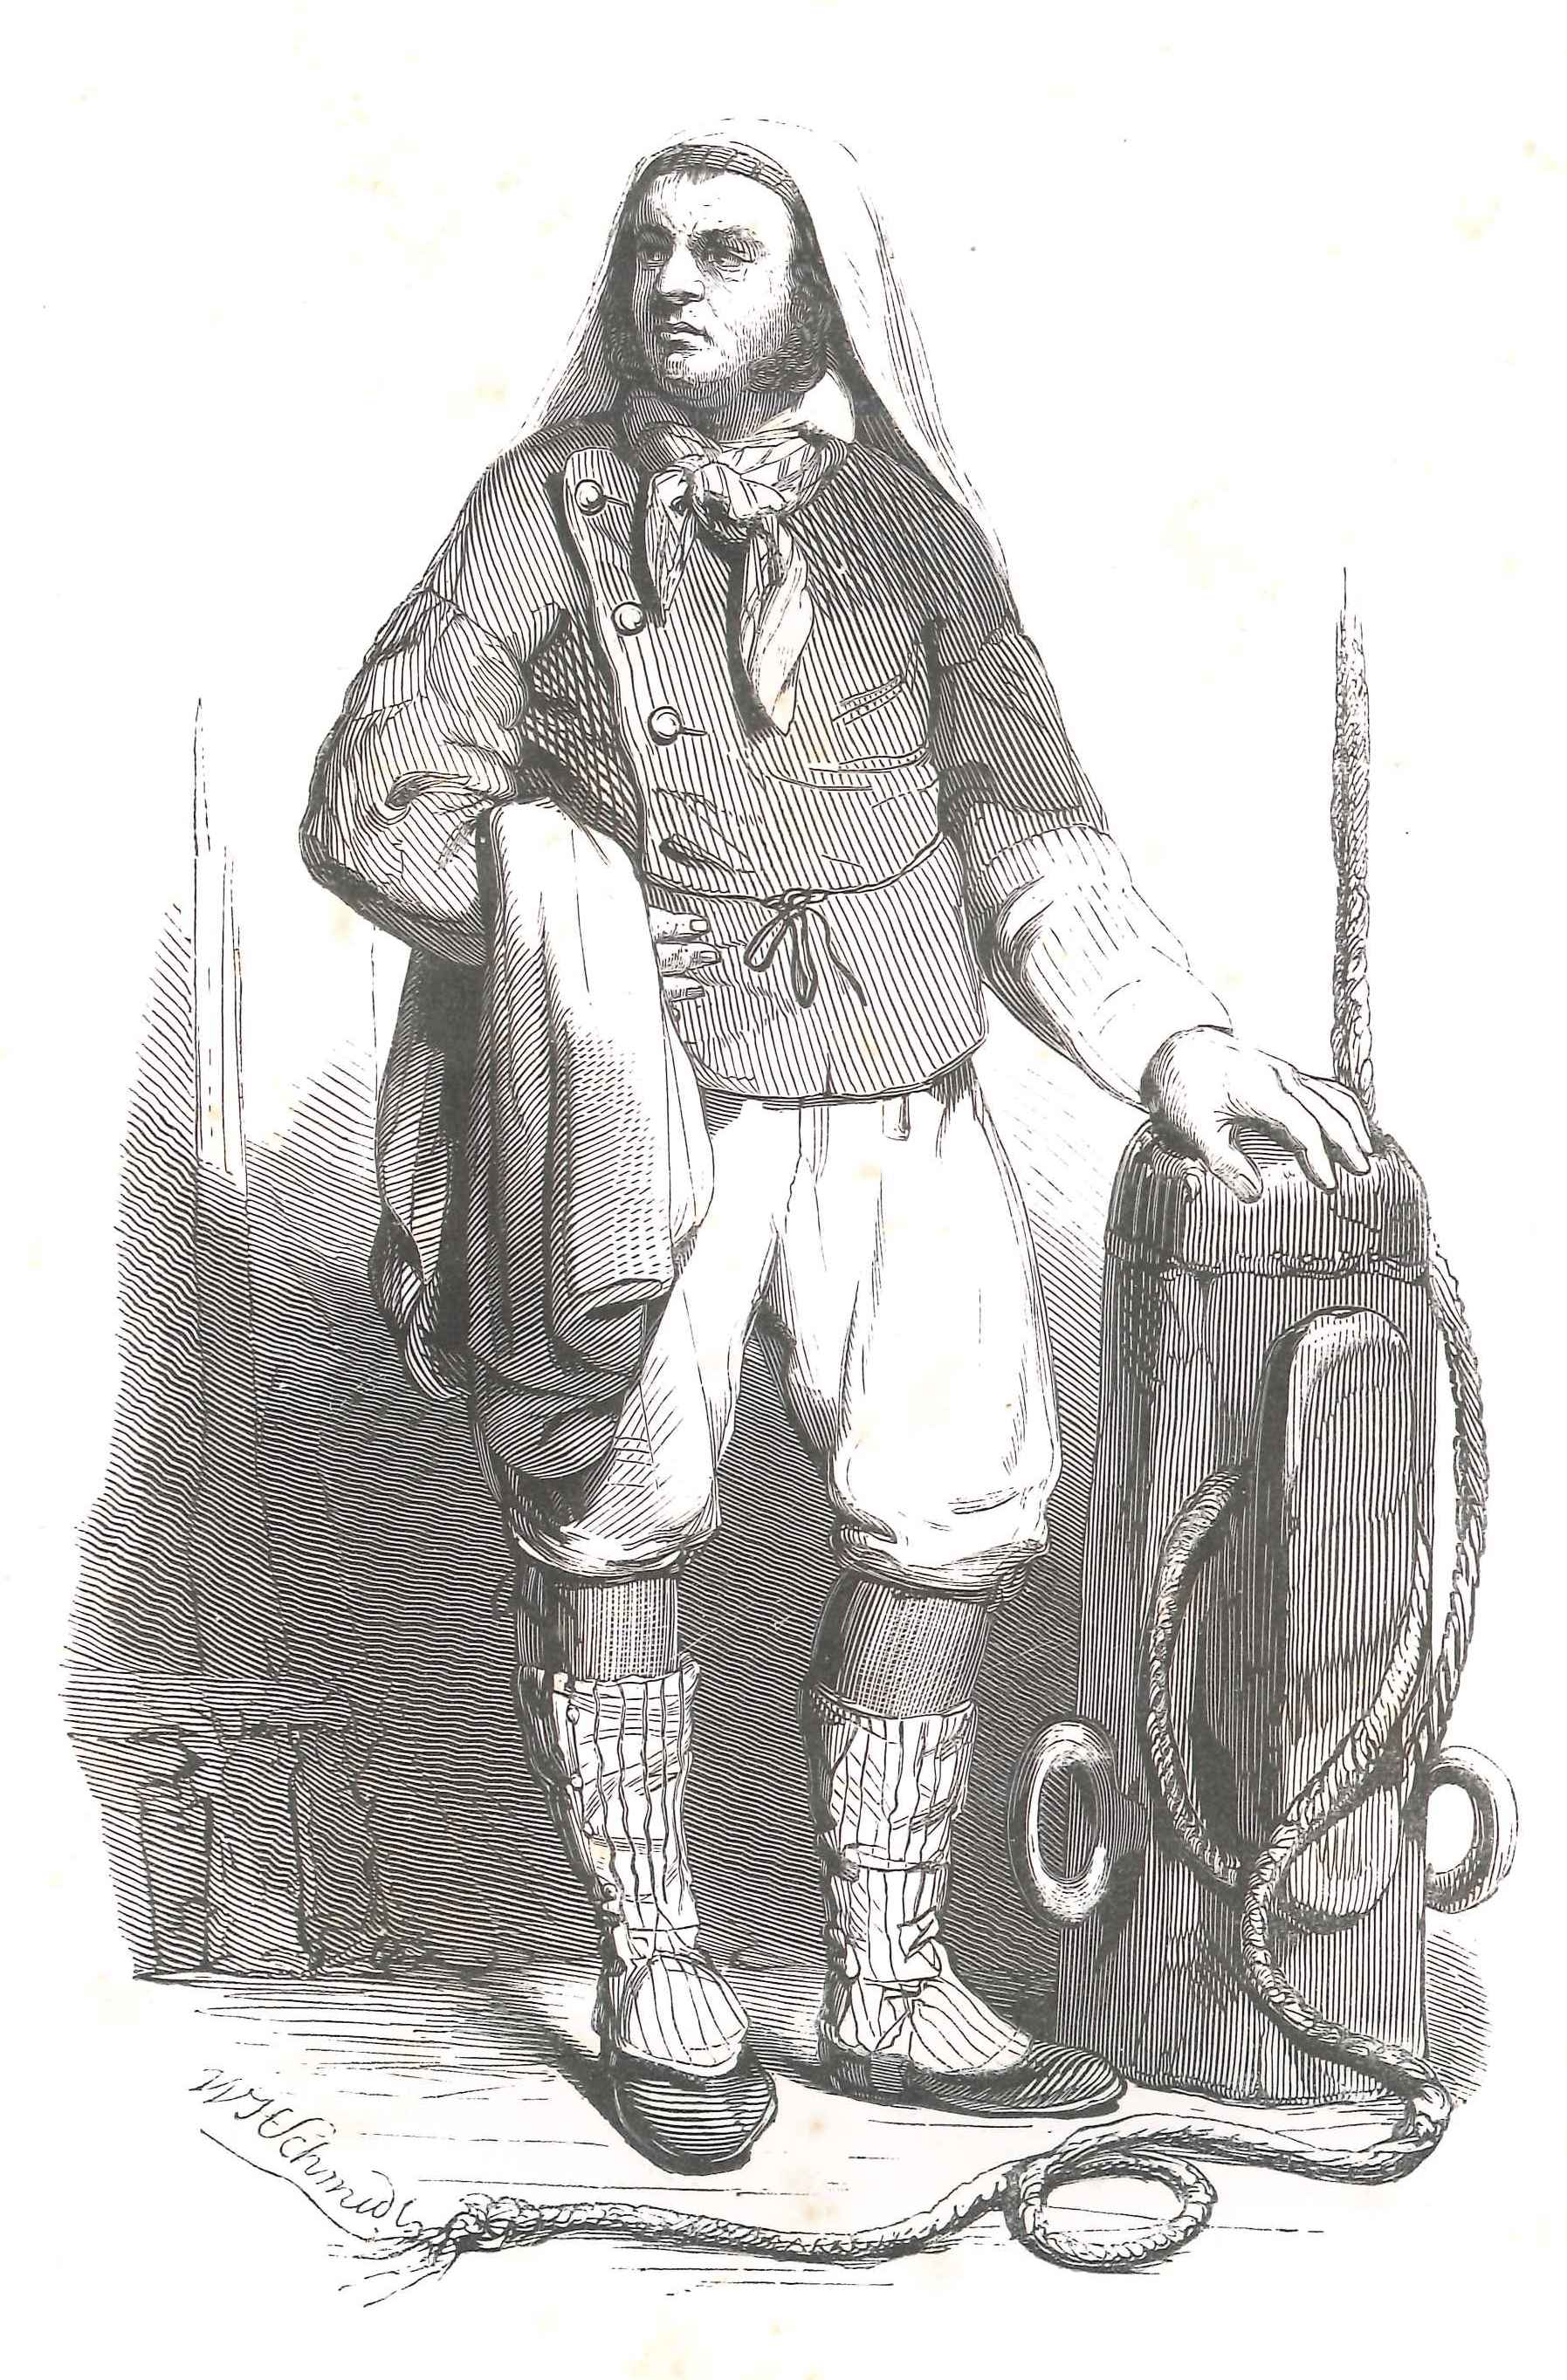 Een sjouwerman, actief op de haven en de markten. 'Karakterschetsen', 1841. HMDB.